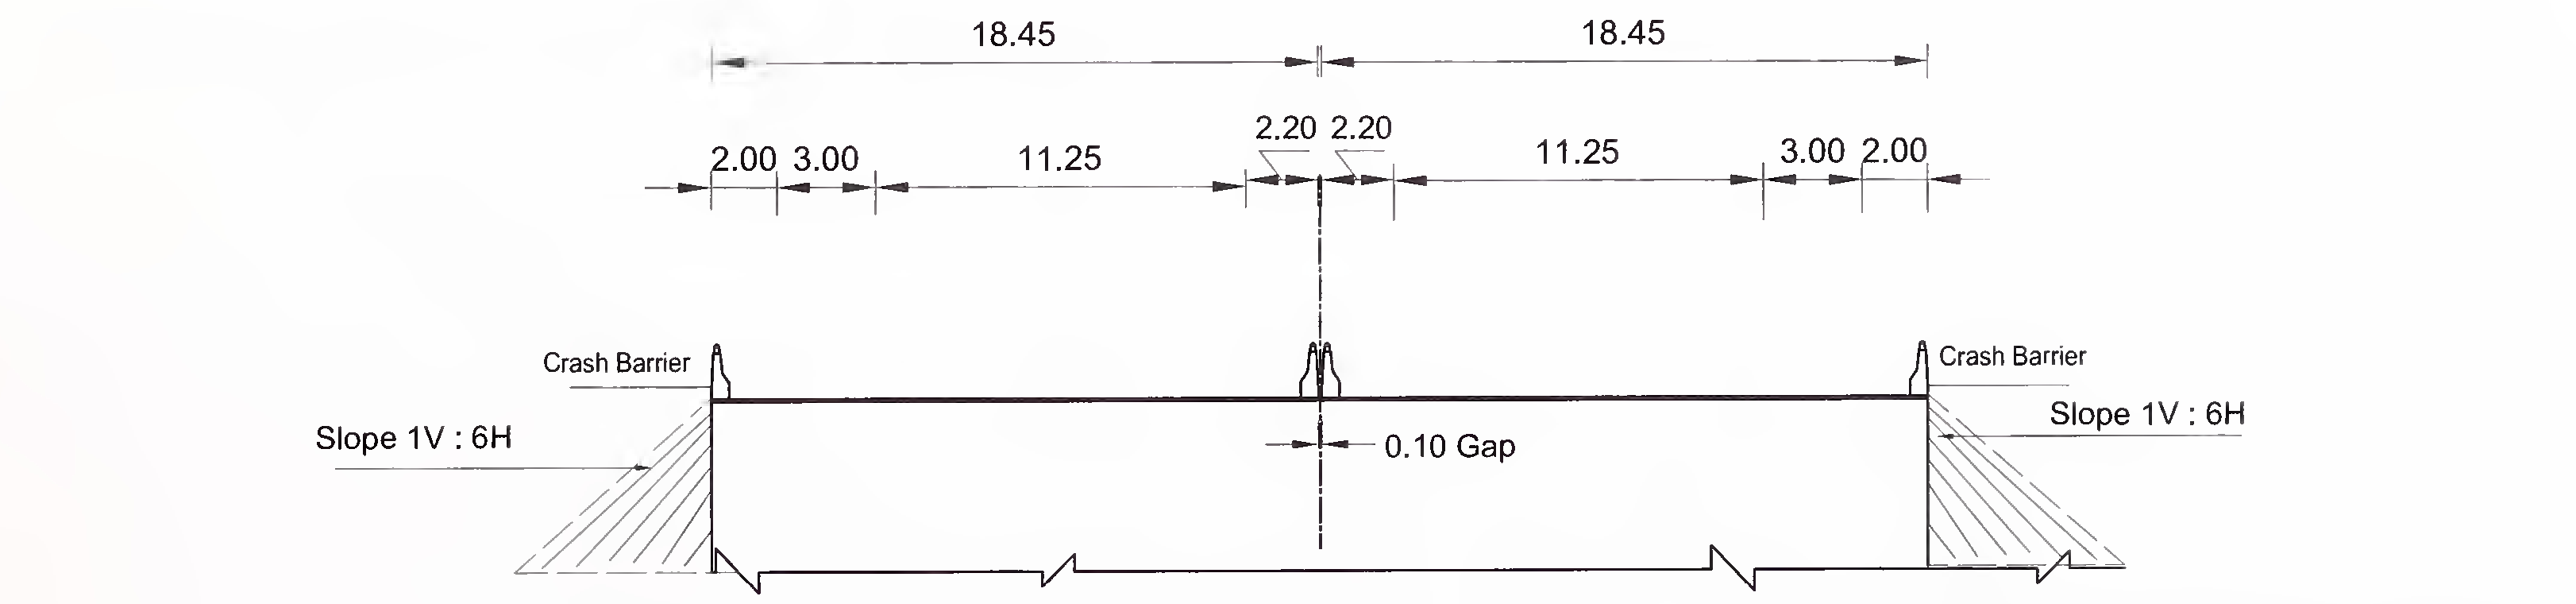 ಚಿತ್ರ 6.4 (ಬಿ) 6-ಲೇನ್ (2 × 3) ಗಾಗಿ ಸ್ಲ್ಯಾಬ್ ಮತ್ತು ಬಾಕ್ಸ್ ಪ್ರಕಾರದ ಕಲ್ವರ್ಟ್‌ನ ವಿಶಿಷ್ಟ ಅಡ್ಡ-ವಿಭಾಗ ಫ್ಲಶ್ ಮೀಡಿಯನ್‌ನೊಂದಿಗೆ ಎಕ್ಸ್‌ಪ್ರೆಸ್ ಹೆದ್ದಾರಿ